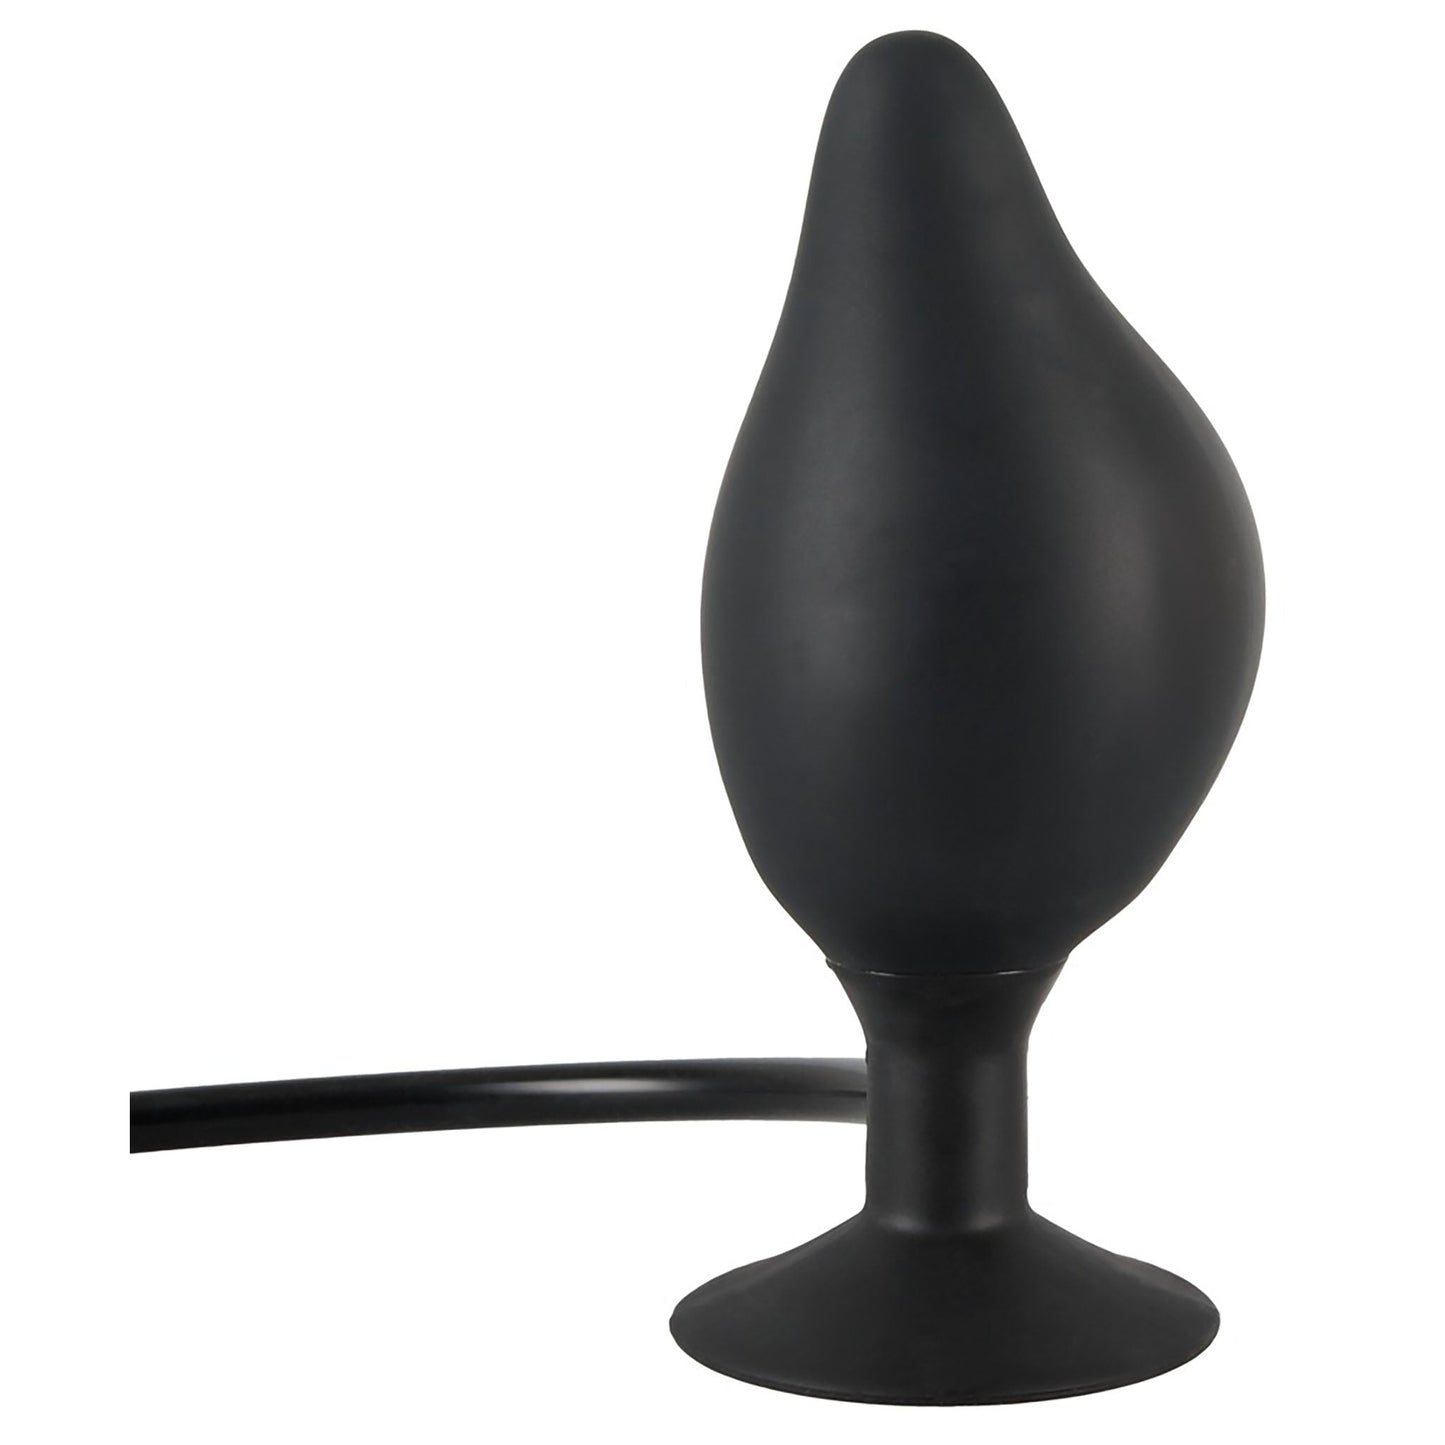 True Black Inflatable Butt Plug, aufblasbarer Analplug in schwarz mit Ballpumpe